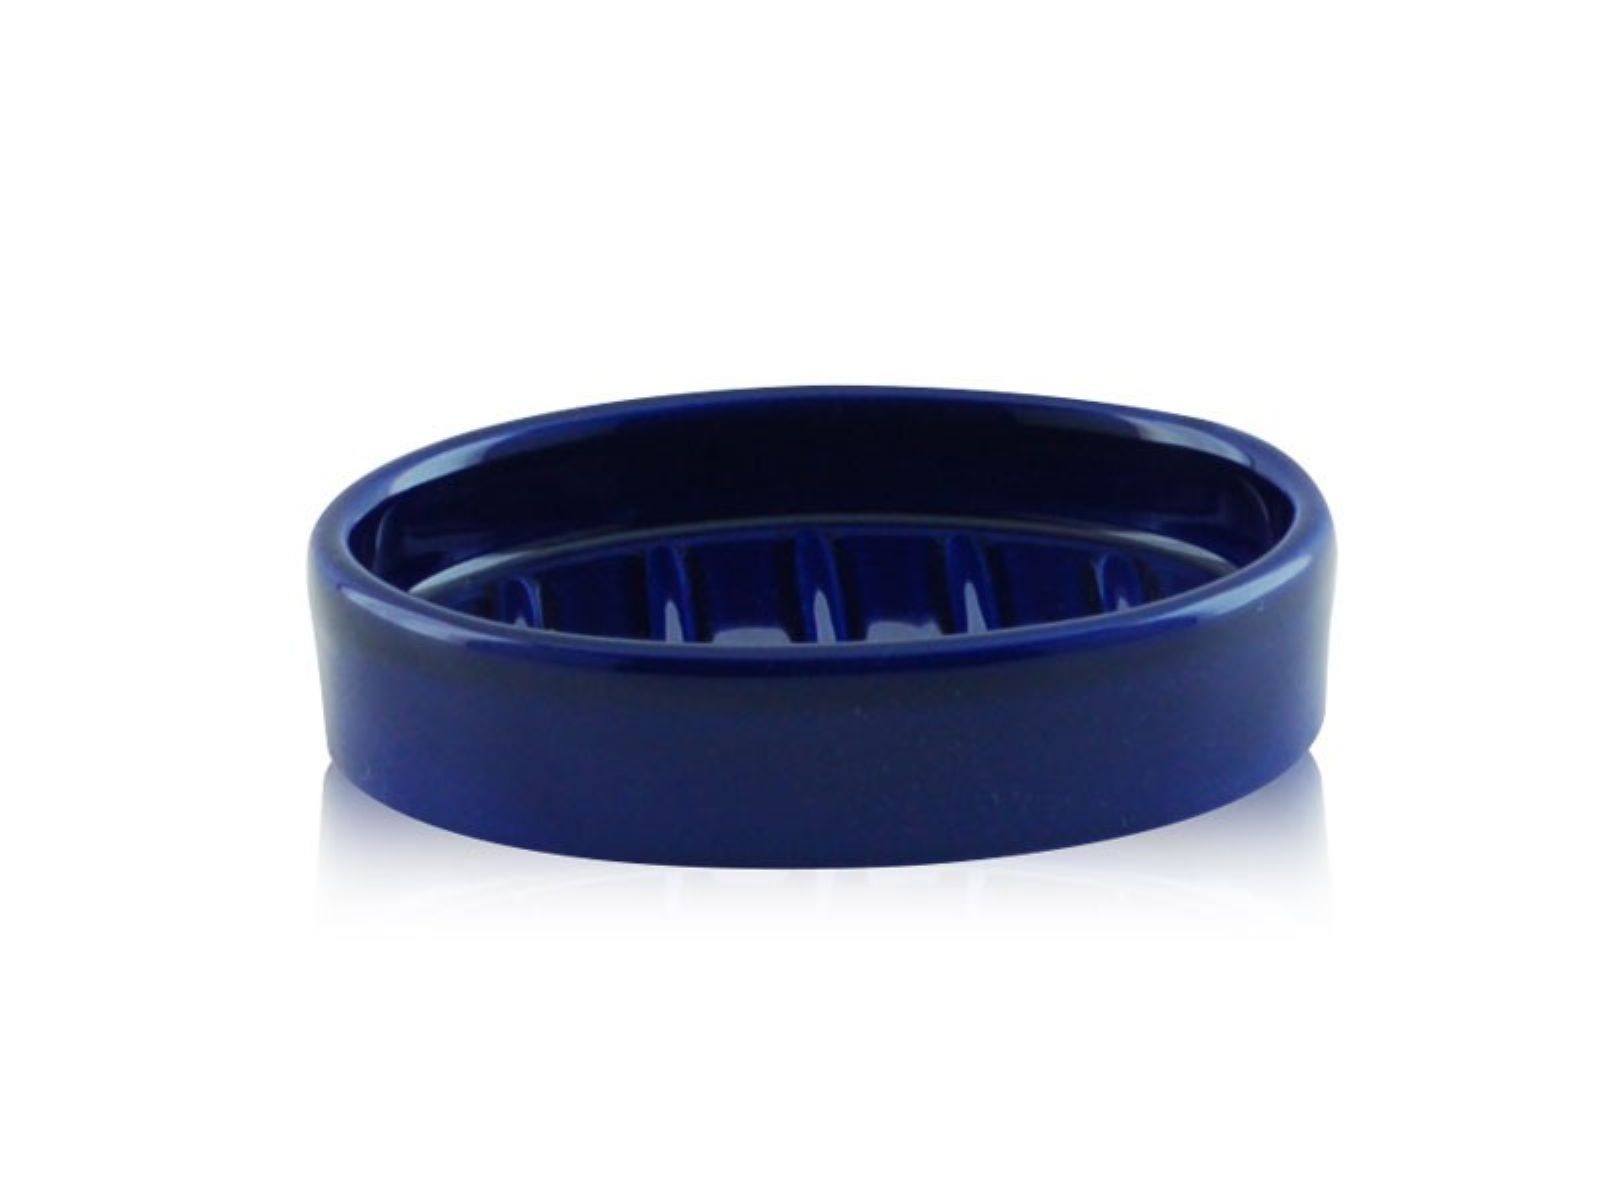 Porta sapone da appoggio ovale in ceramica - Porta sapone da appoggio ovale blu BD-SAP-CBL-01